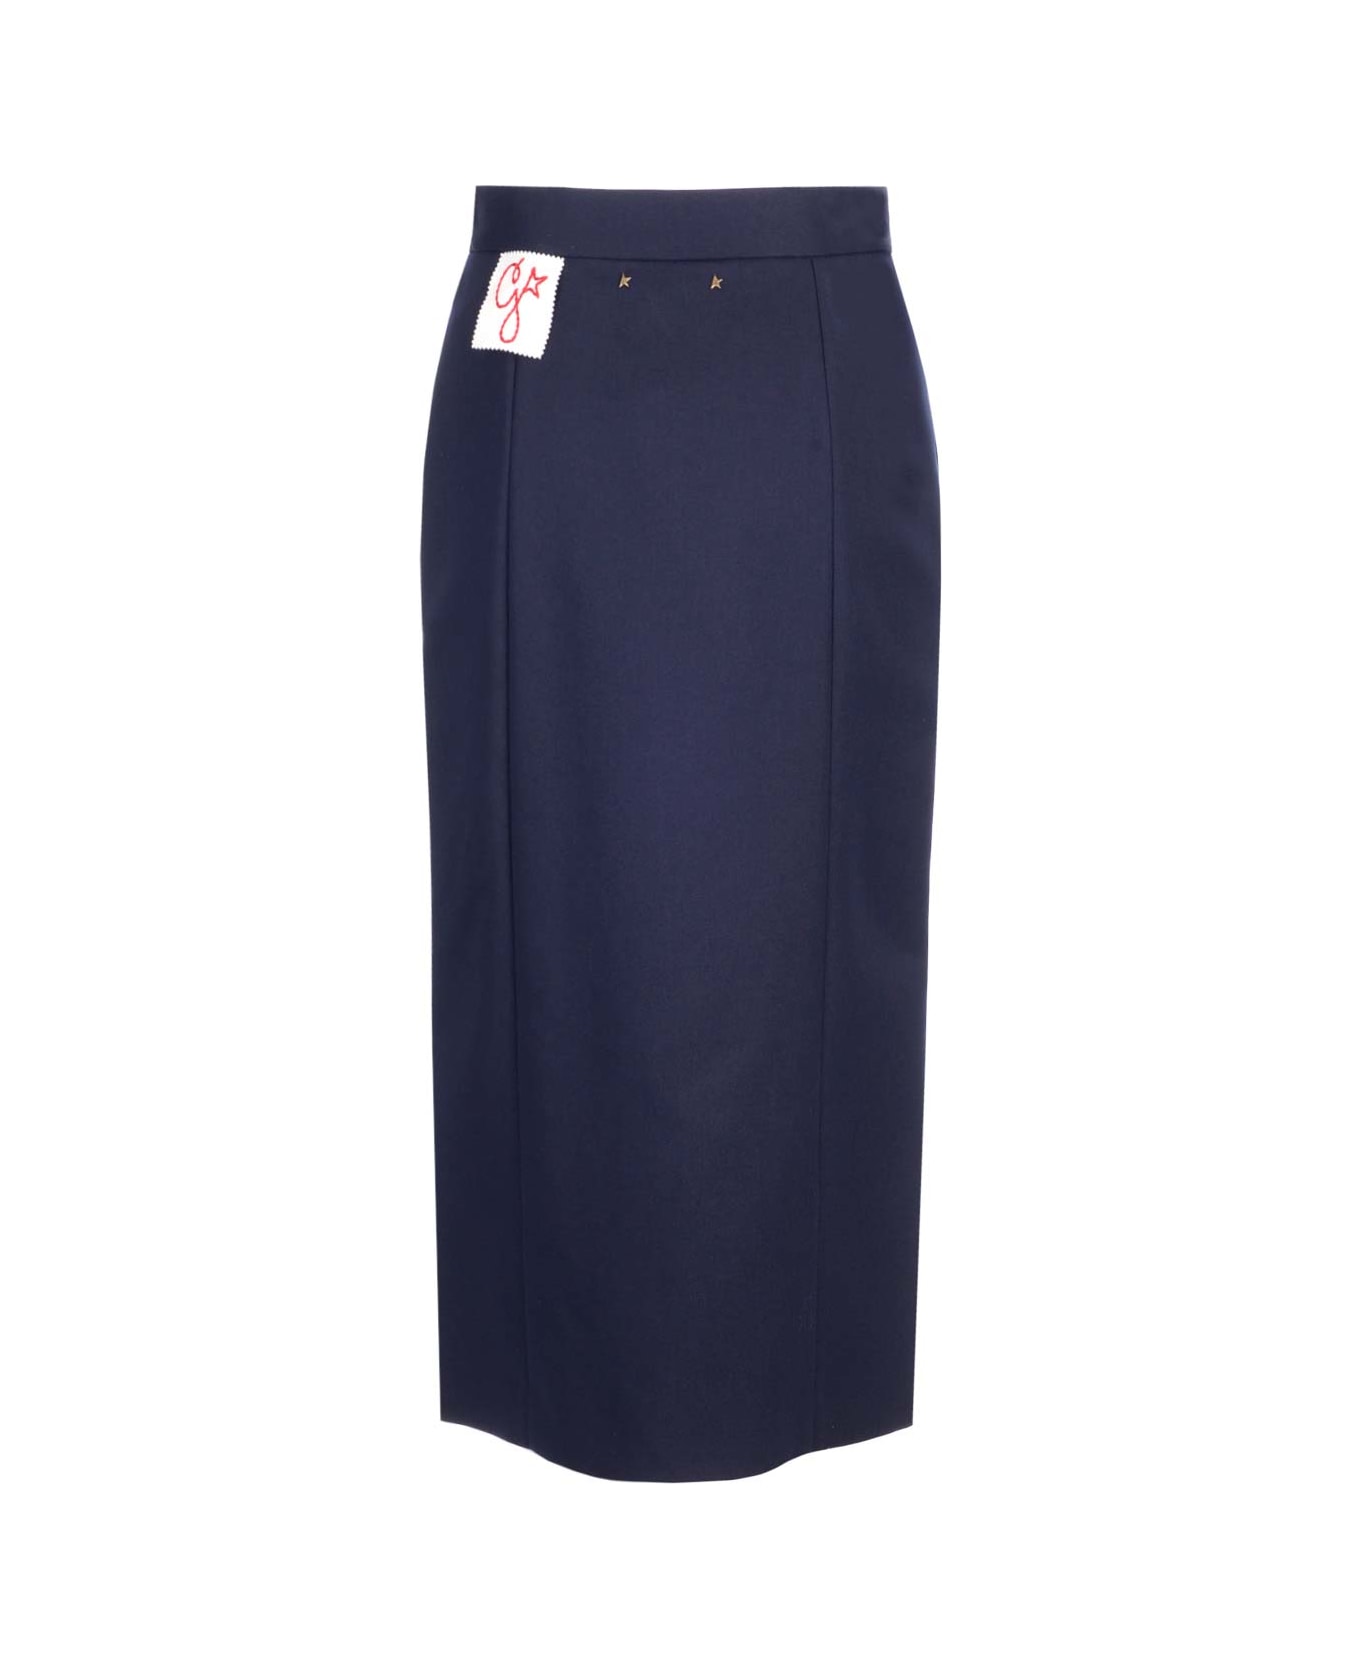 Golden Goose Christine Front Buttoning Side Pocket Skirt - Blue